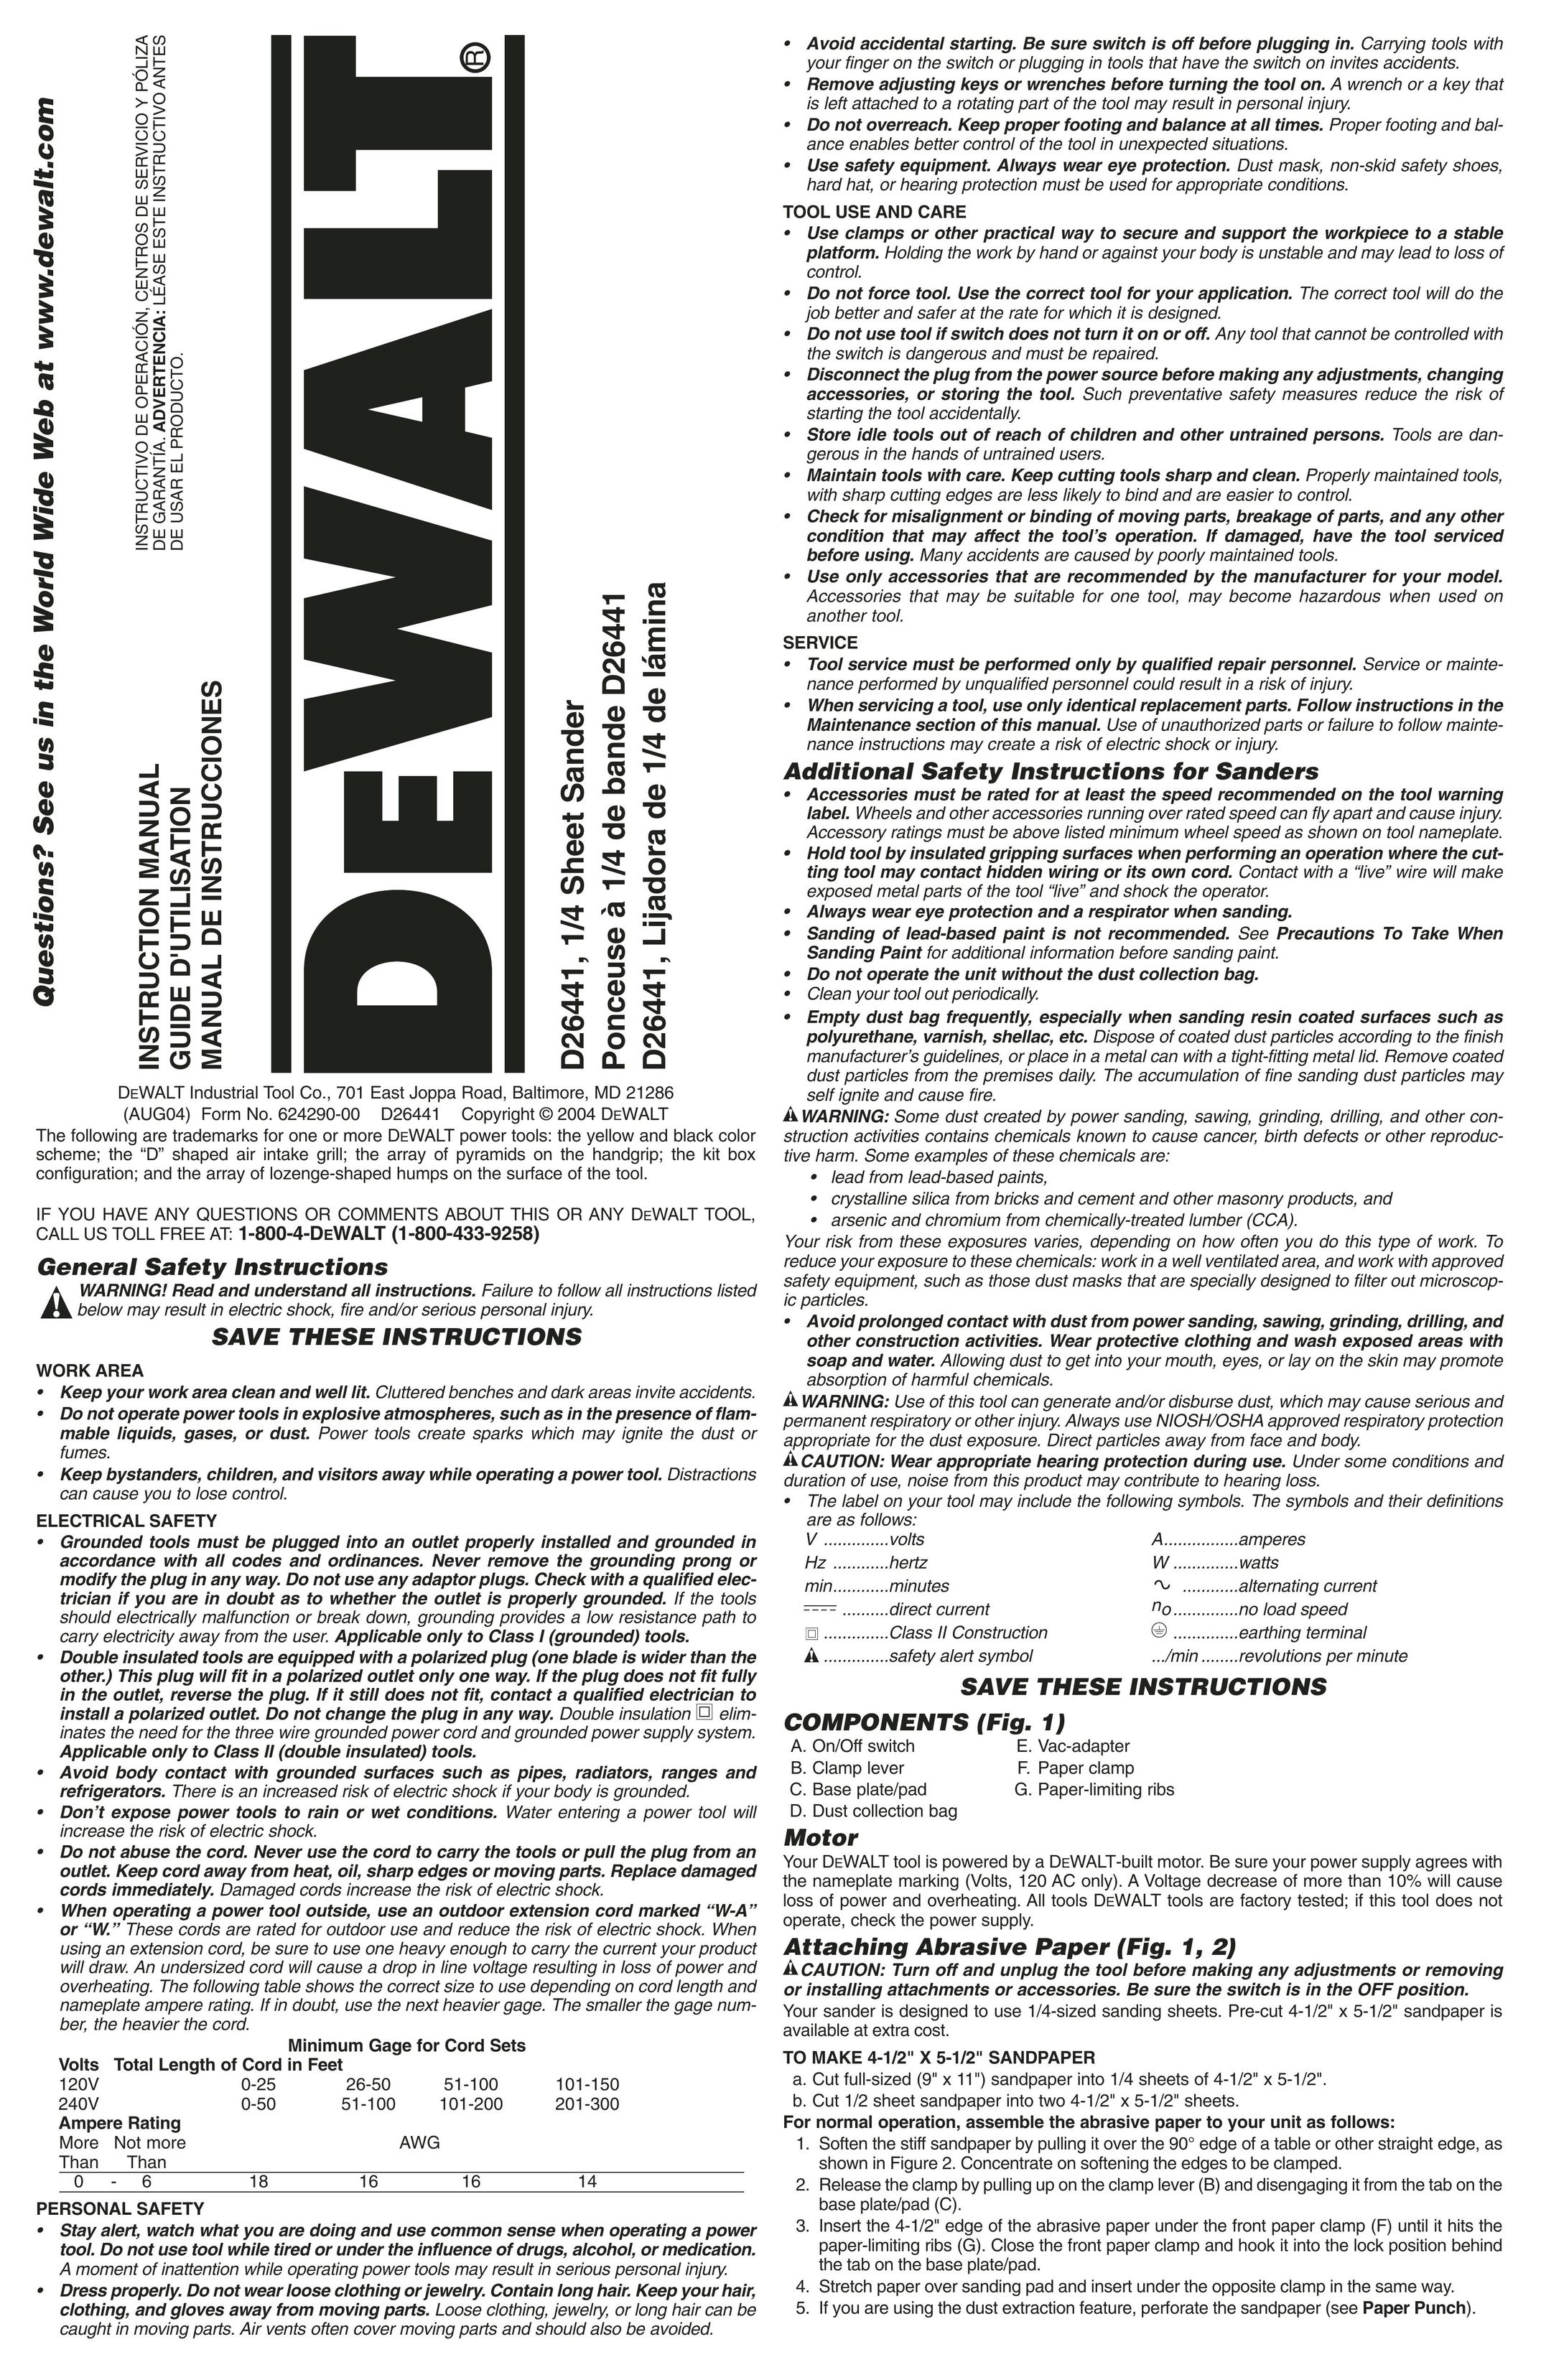 DeWalt D26441K Sander User Manual